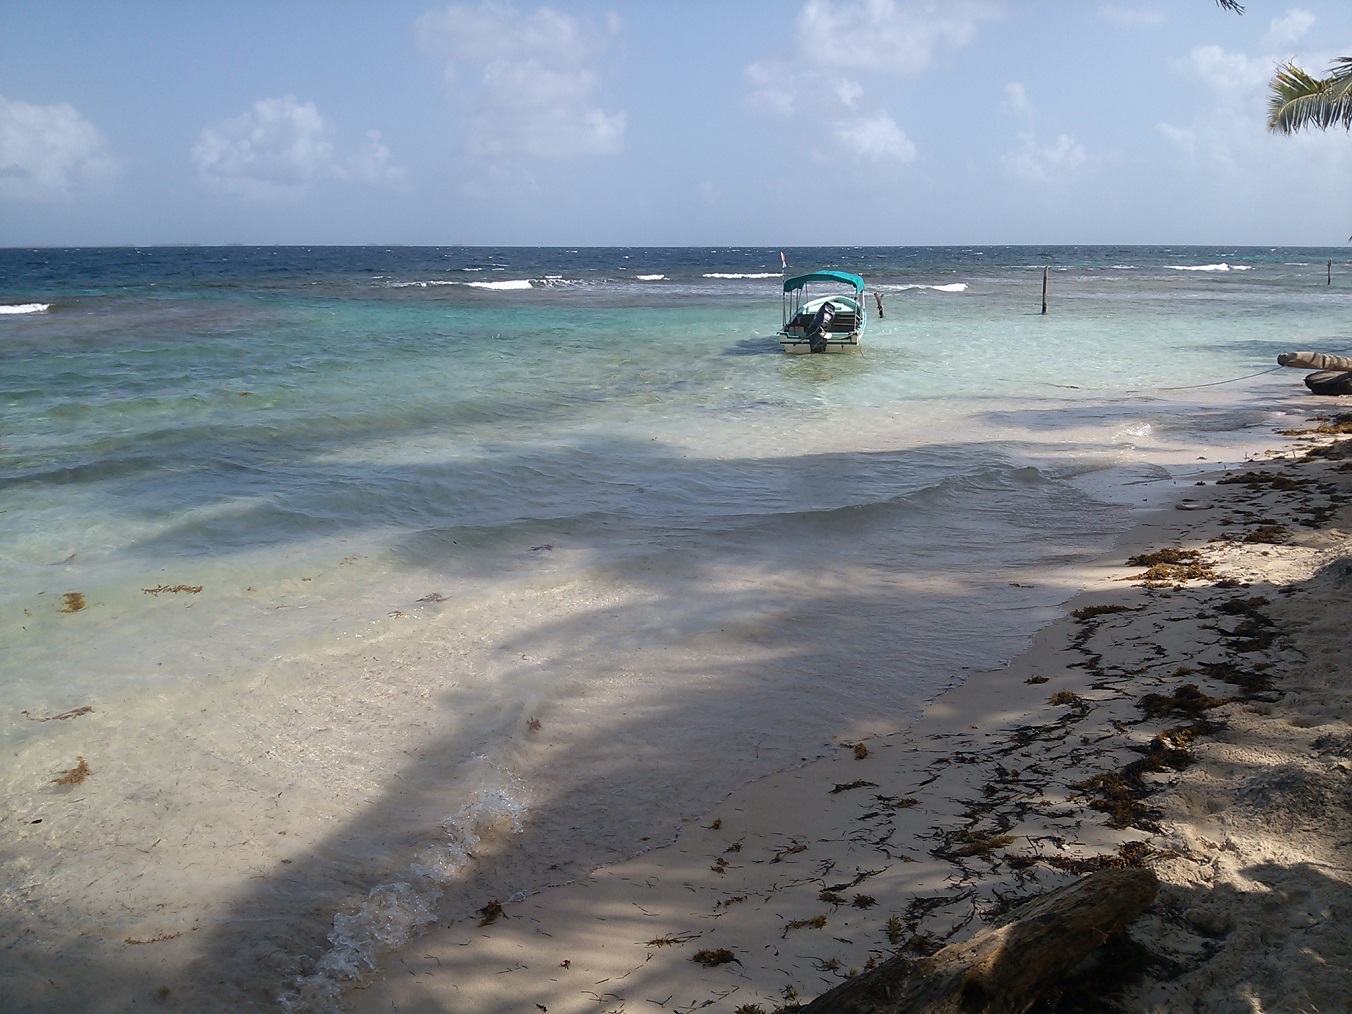 Fotografie cu Iguana island beach - locul popular printre cunoscătorii de relaxare